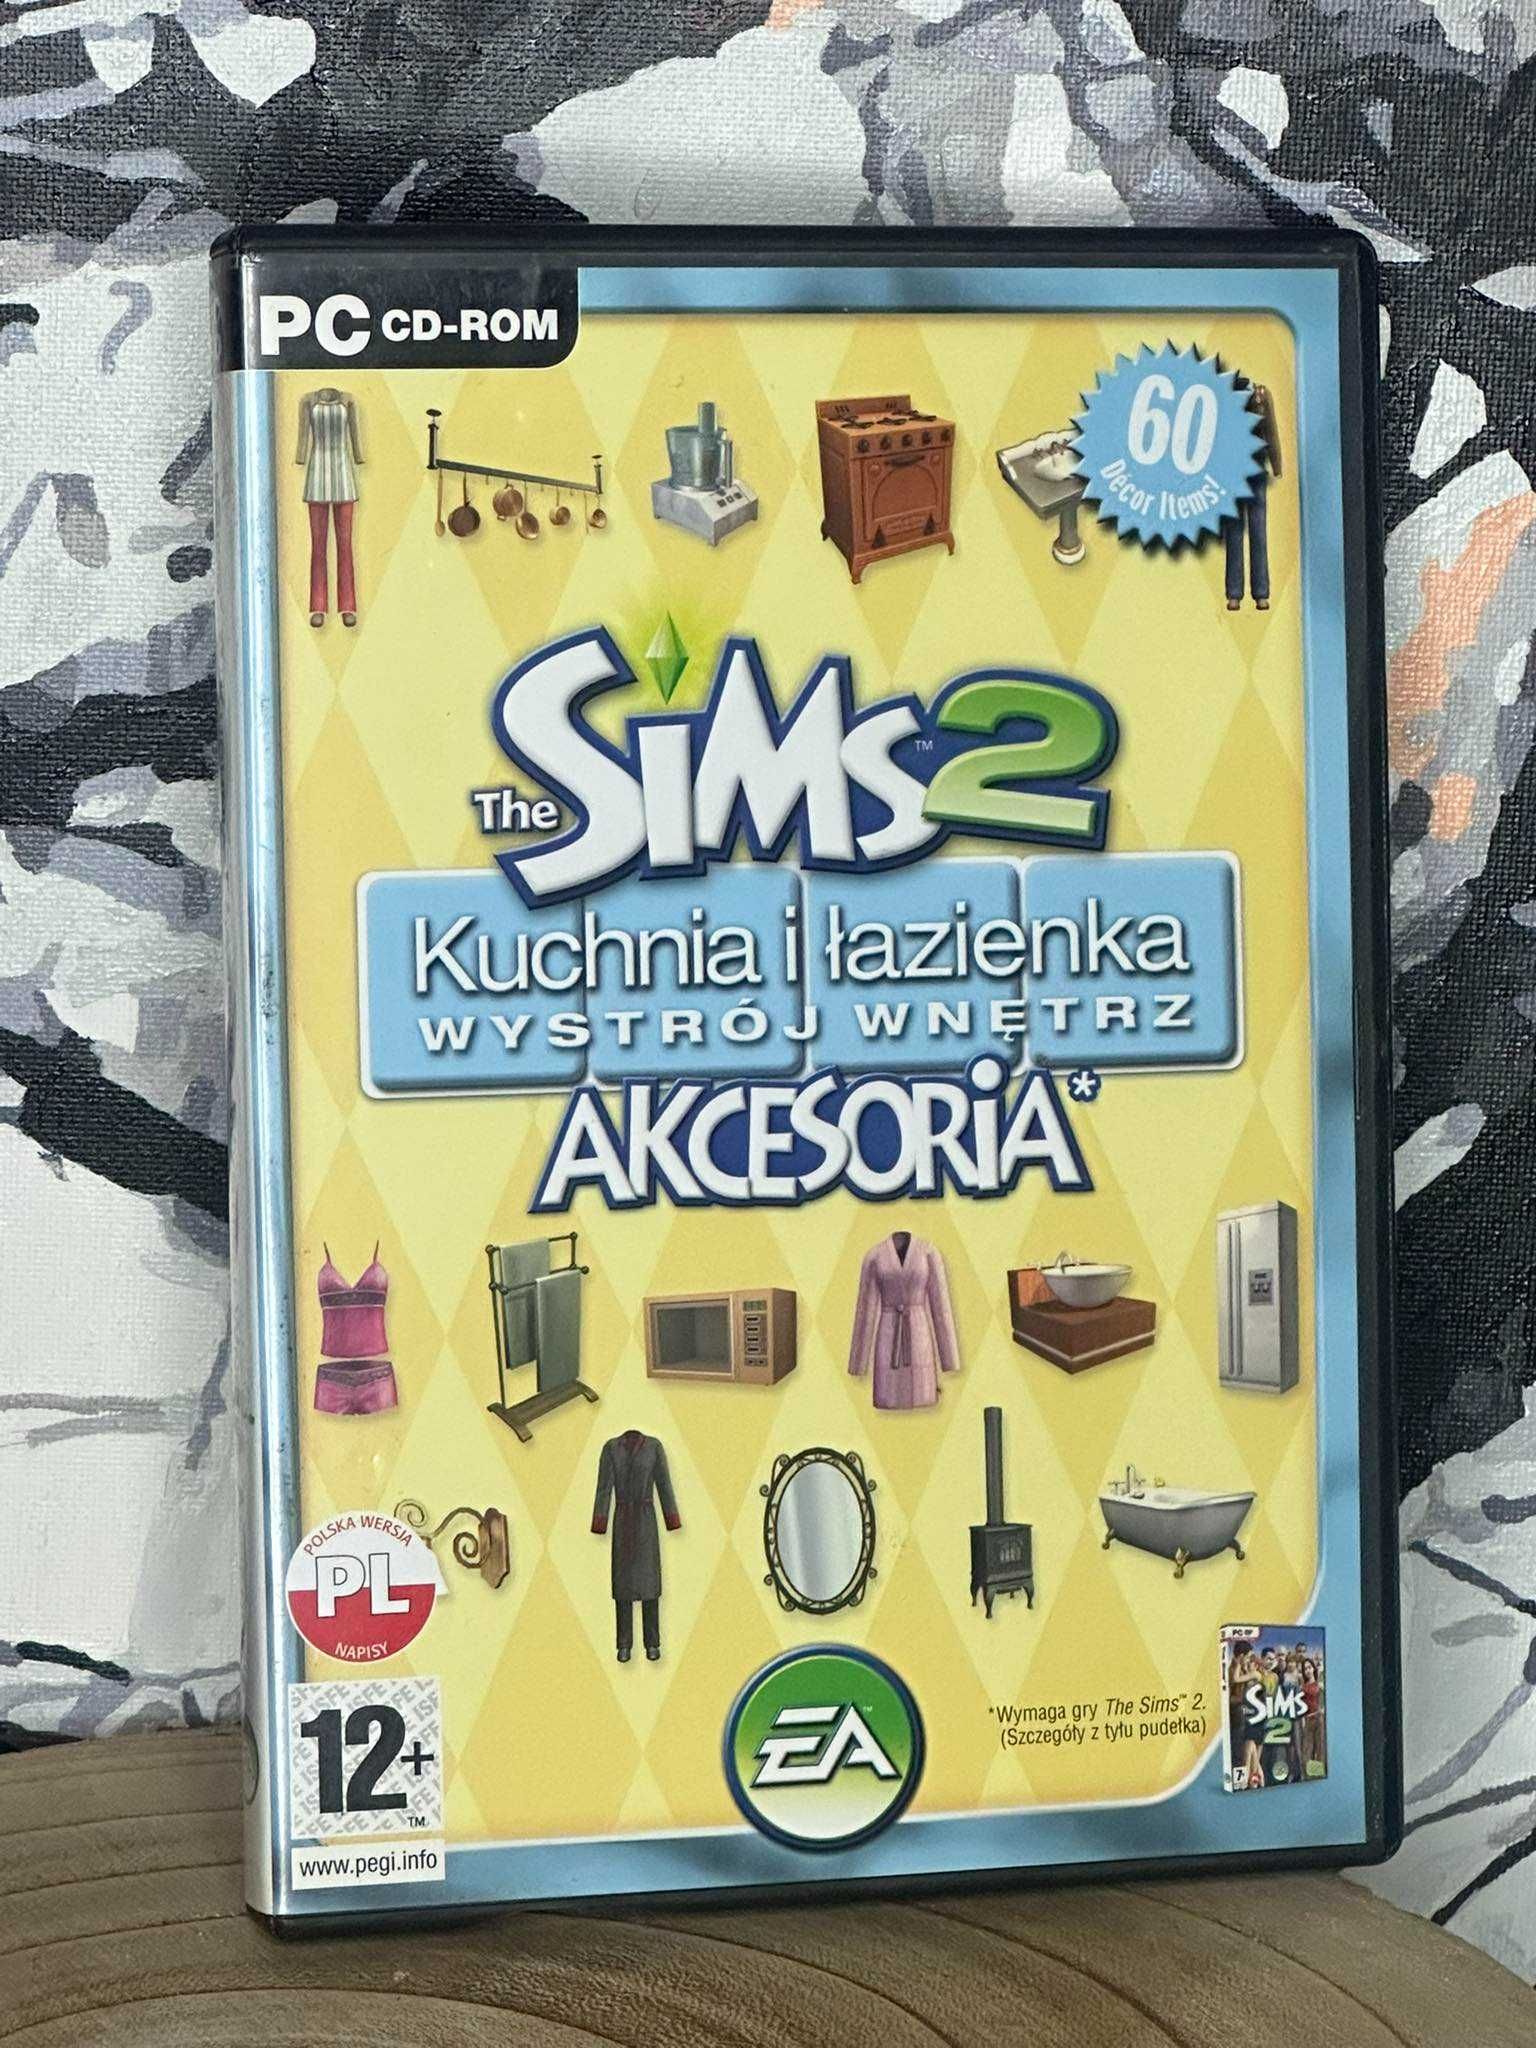 The Sims Kuchnia i Łazienka akcesoria - dodatek do simsy 2 - PL PC